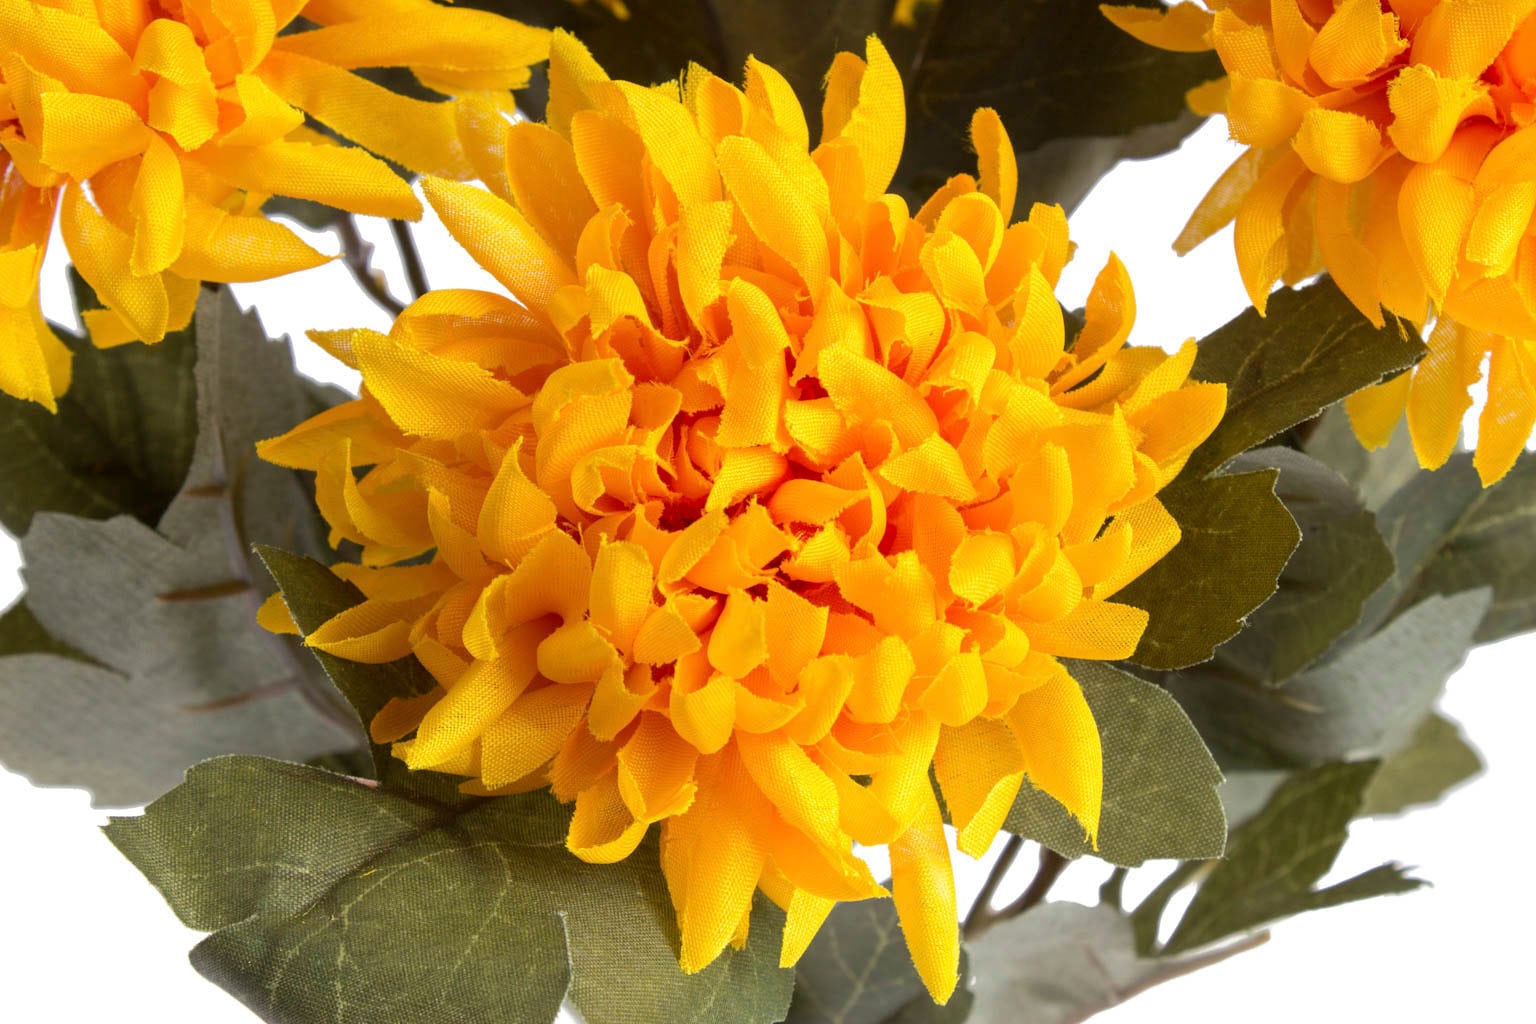 Botanic-Haus Kunstblume »Chrysanthemenstrauß«, (1 St.) online kaufen